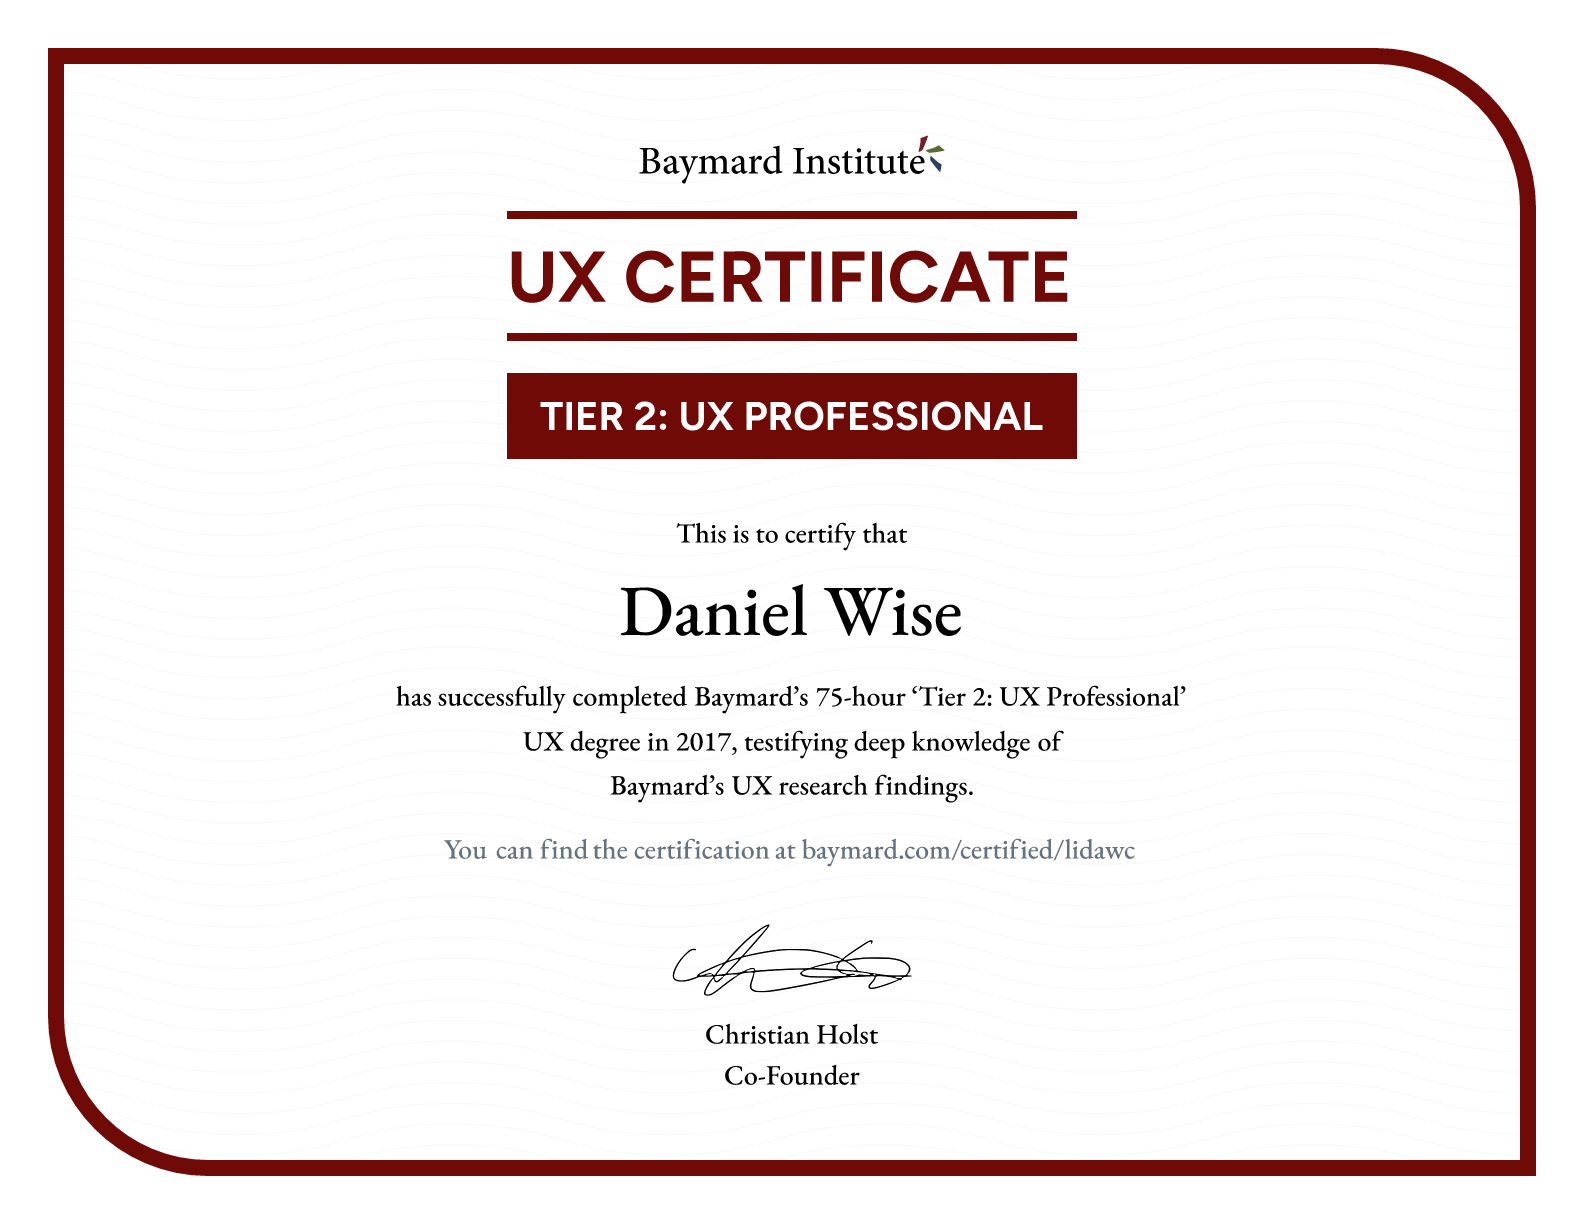 Daniel Wise’s certificate